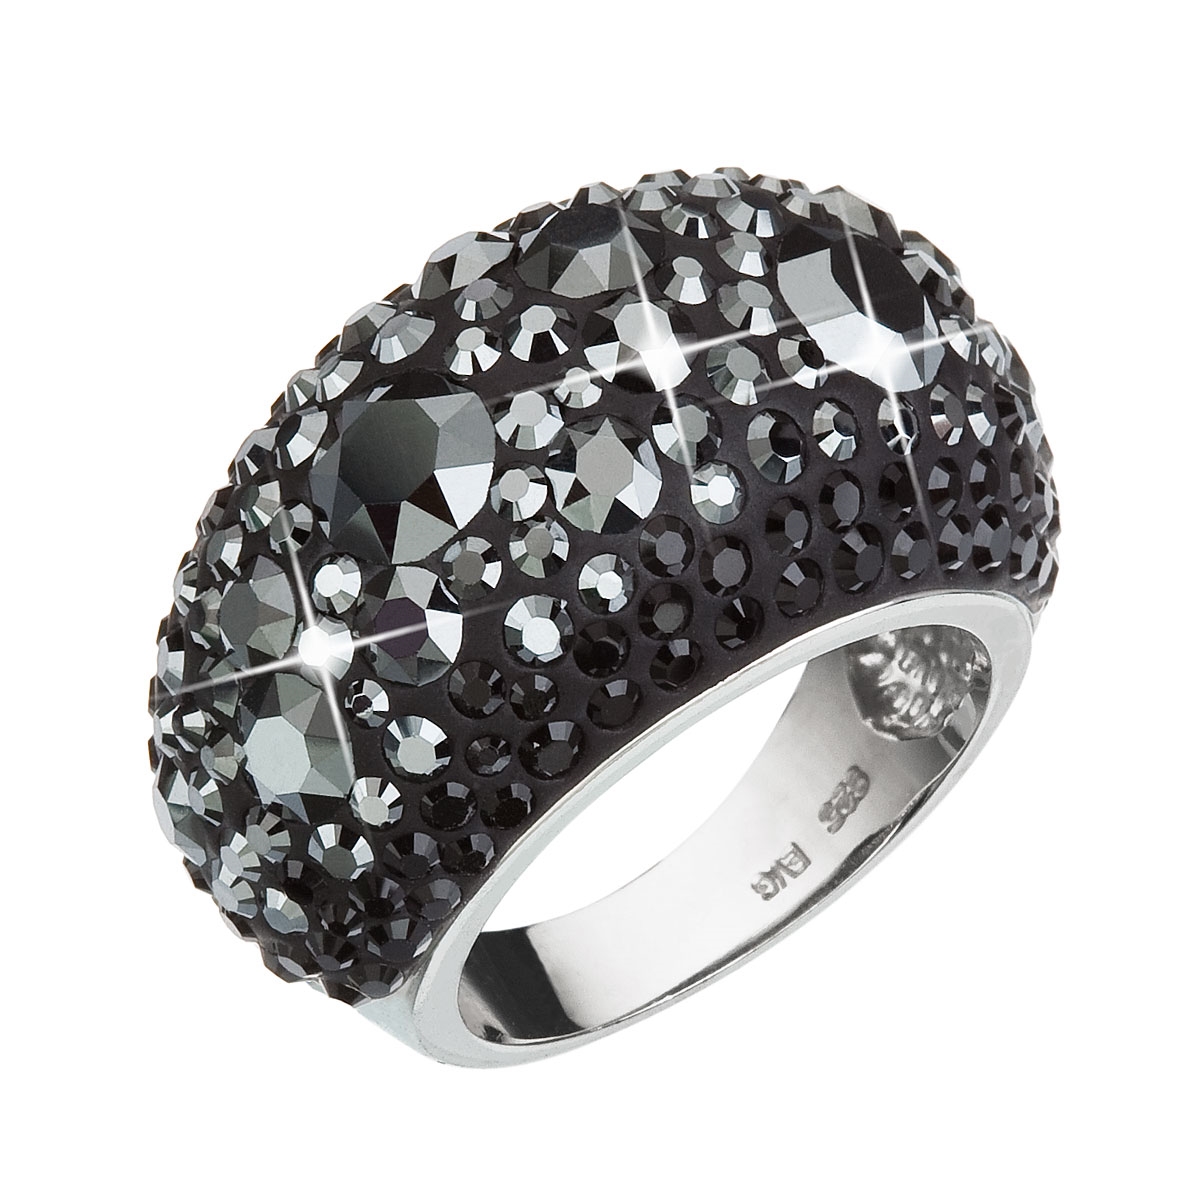 Strieborný prsteň s kryštálmi Crystals from Swarovski ®, hematitu